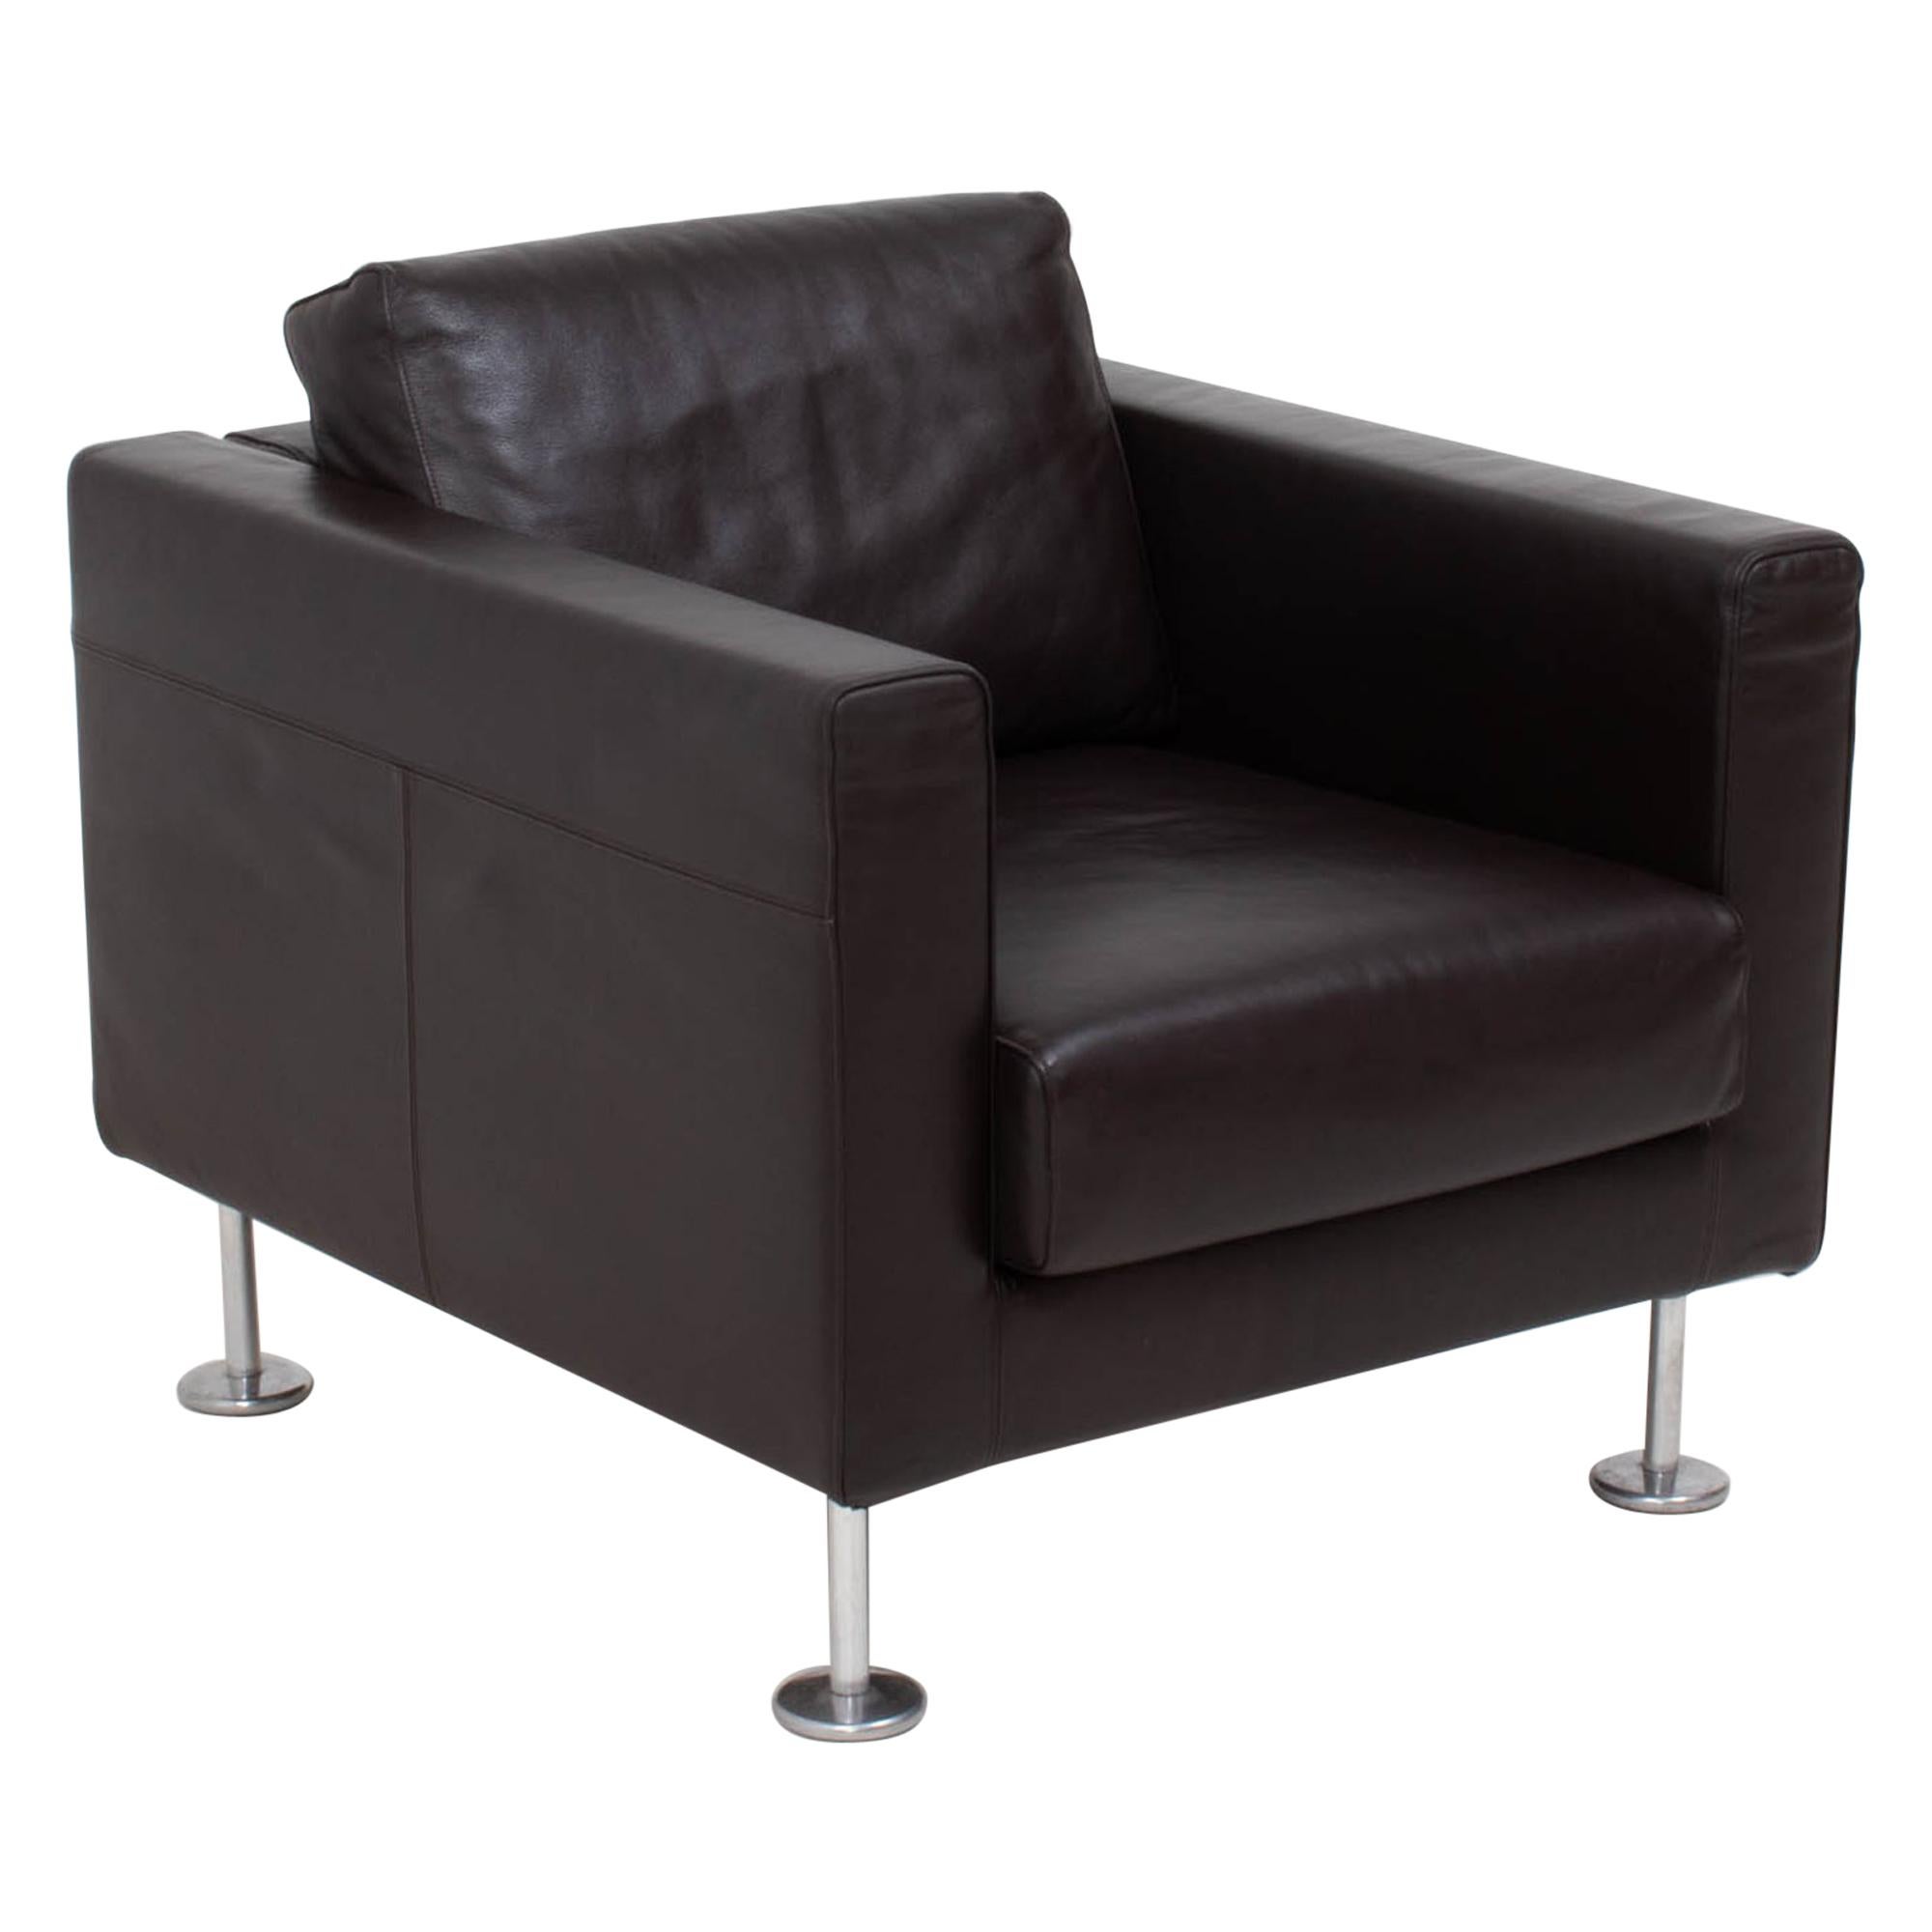 Conçu par Jasper Morrison pour Vitra en 2004, le fauteuil Park présente une esthétique épurée et moderne.

Les chaises ont une silhouette cubique, avec un cadre en bois massif et reposent sur quatre pieds en aluminium poli. La chaise est